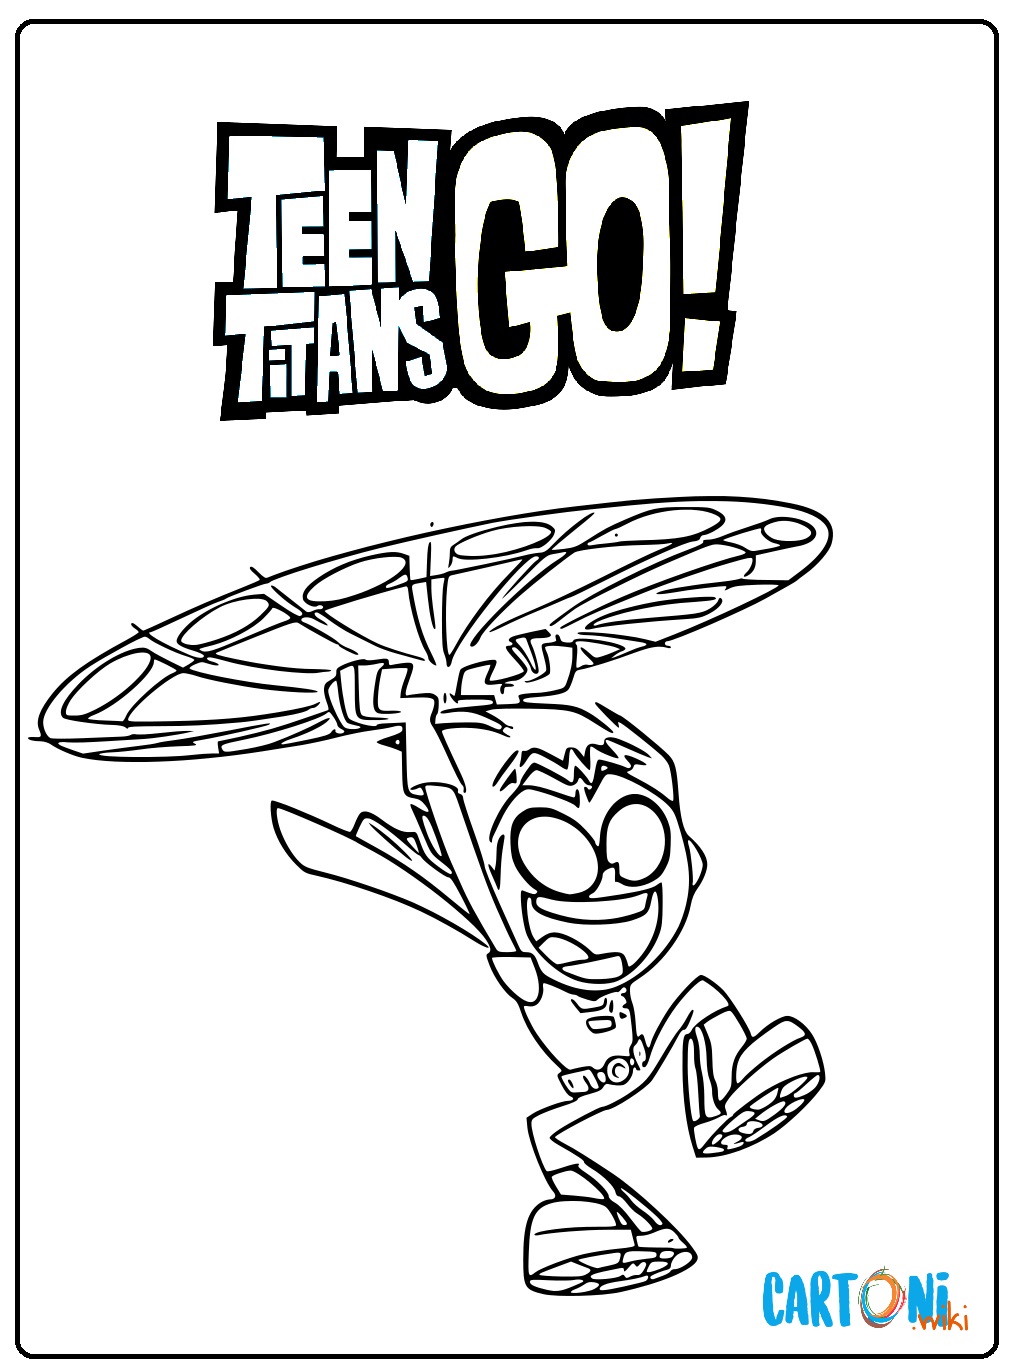 Disegni Teen Titans Go da stampare per bambini